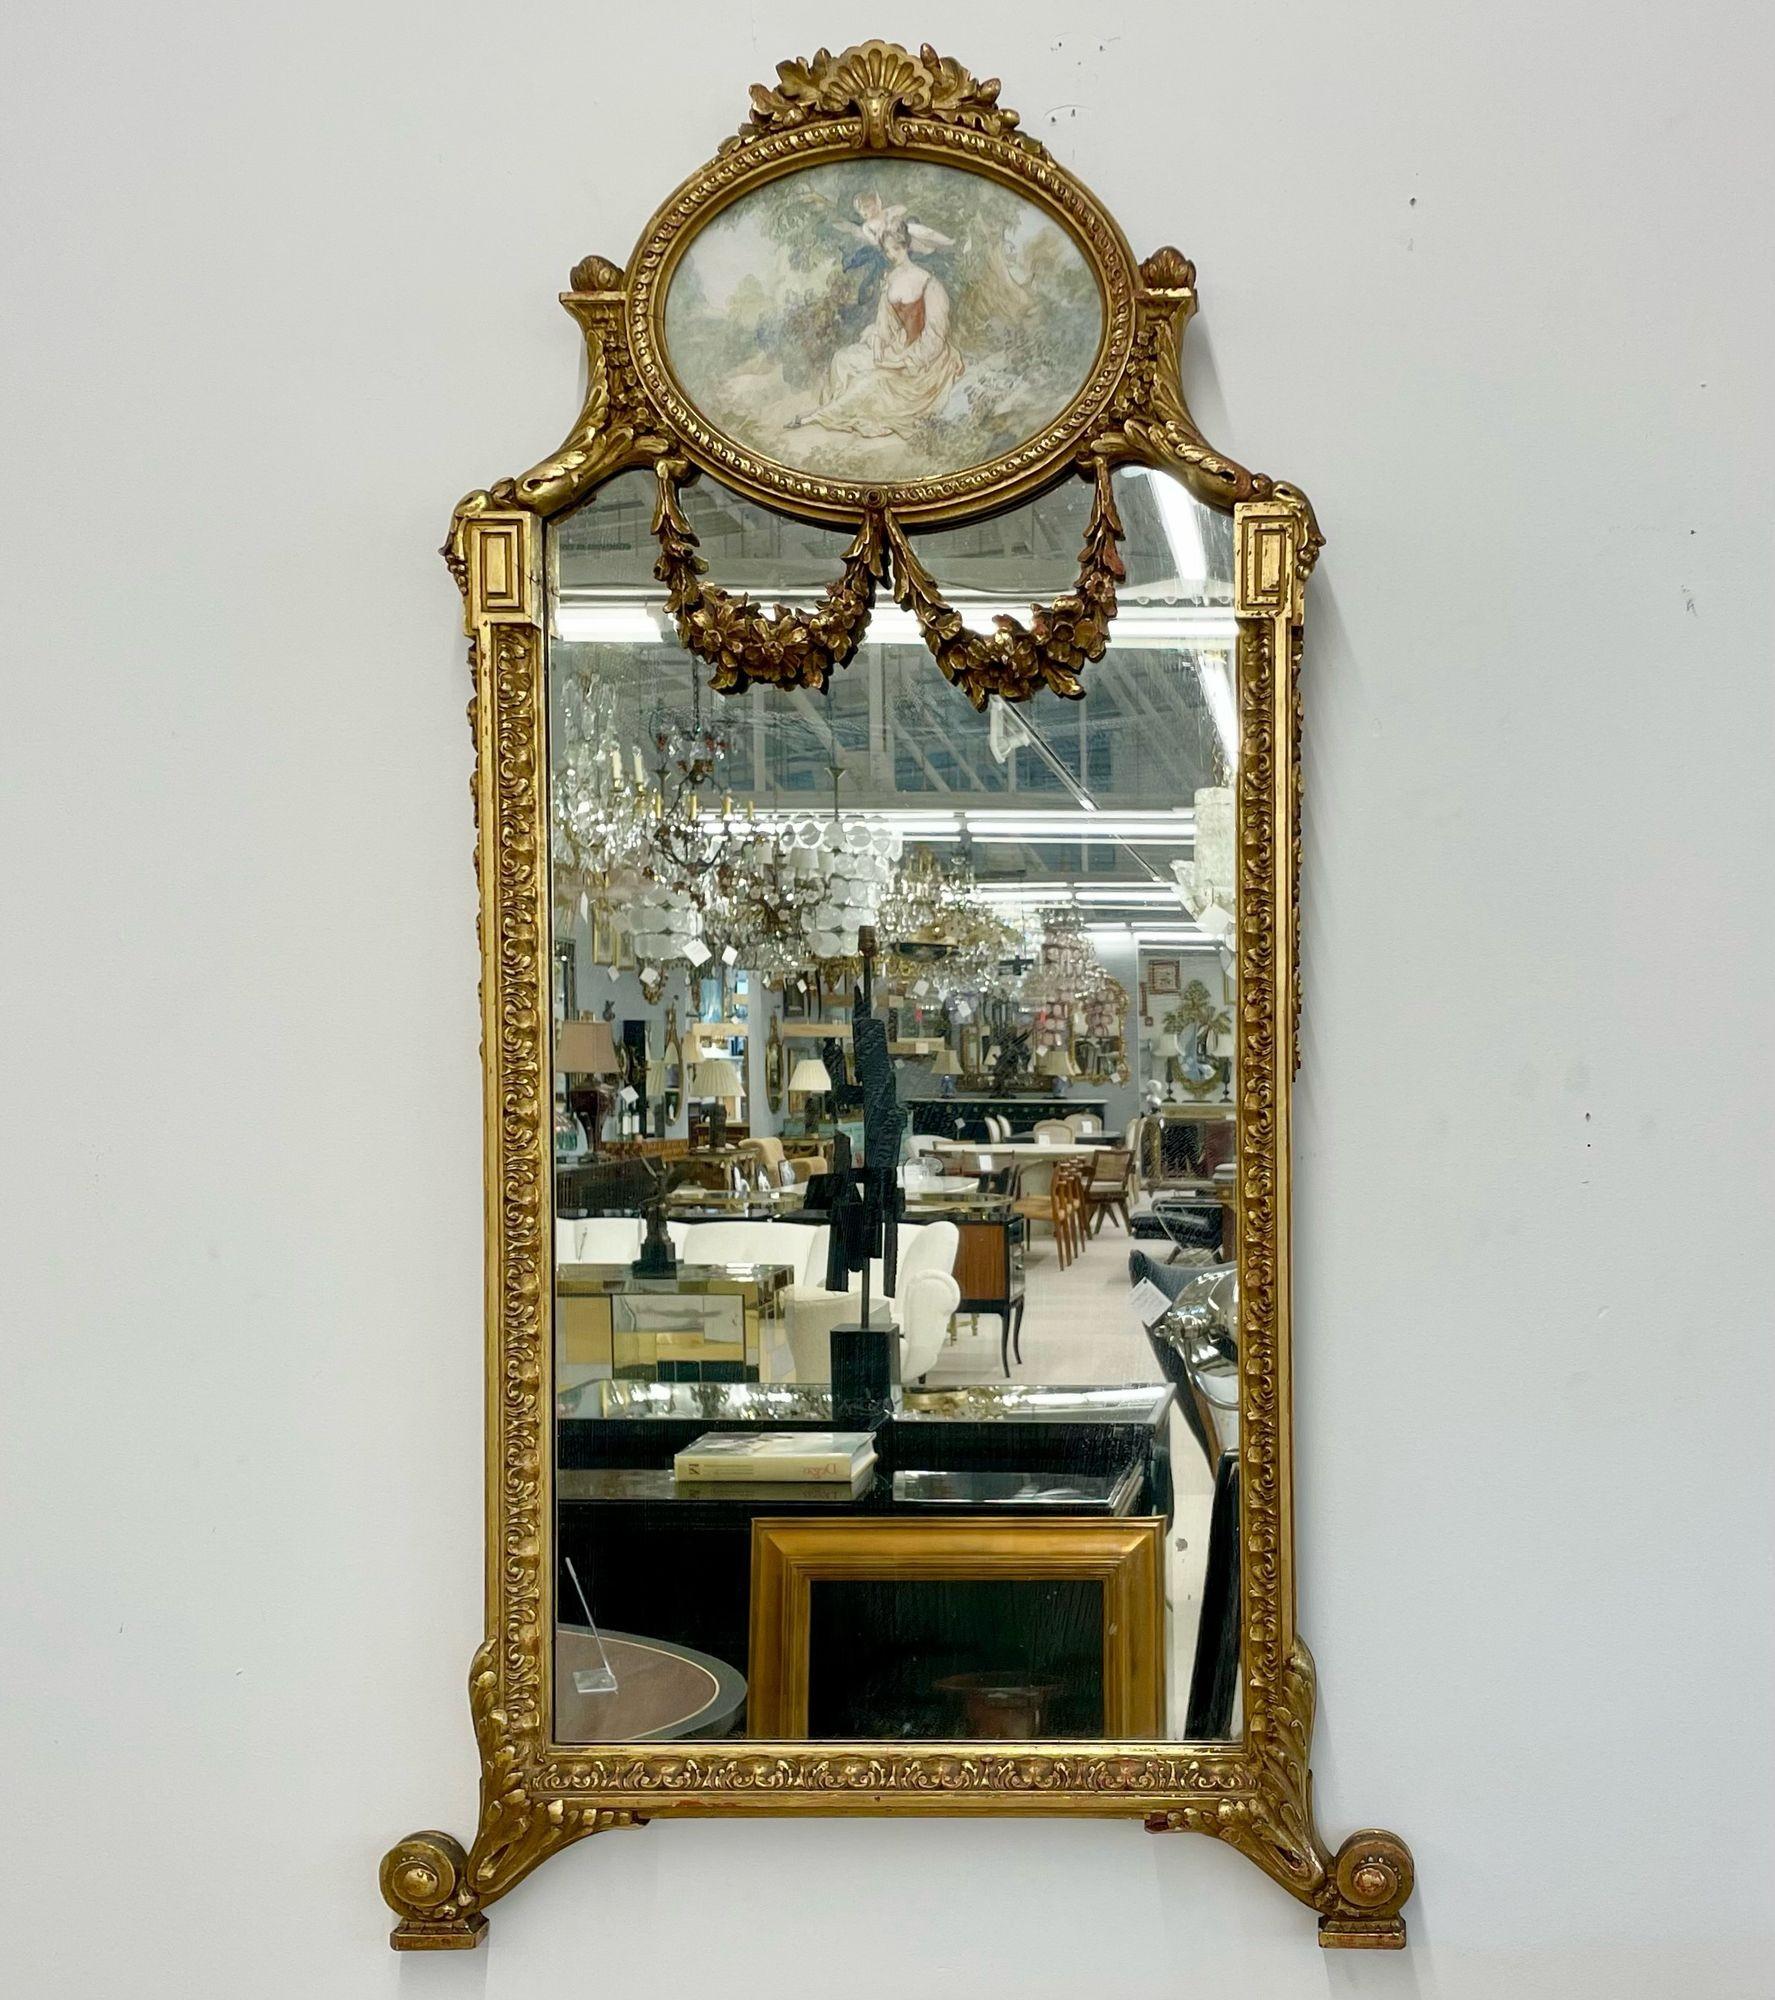 Miroir mural / console en bois doré de style néoclassique français avec une œuvre d'art ovale représentant une jeune fille et son chérubin. 
Miroir mural finement moulé en gesso doré. Diminutif dans sa forme, avec un cadre sculpté et éclairé par un